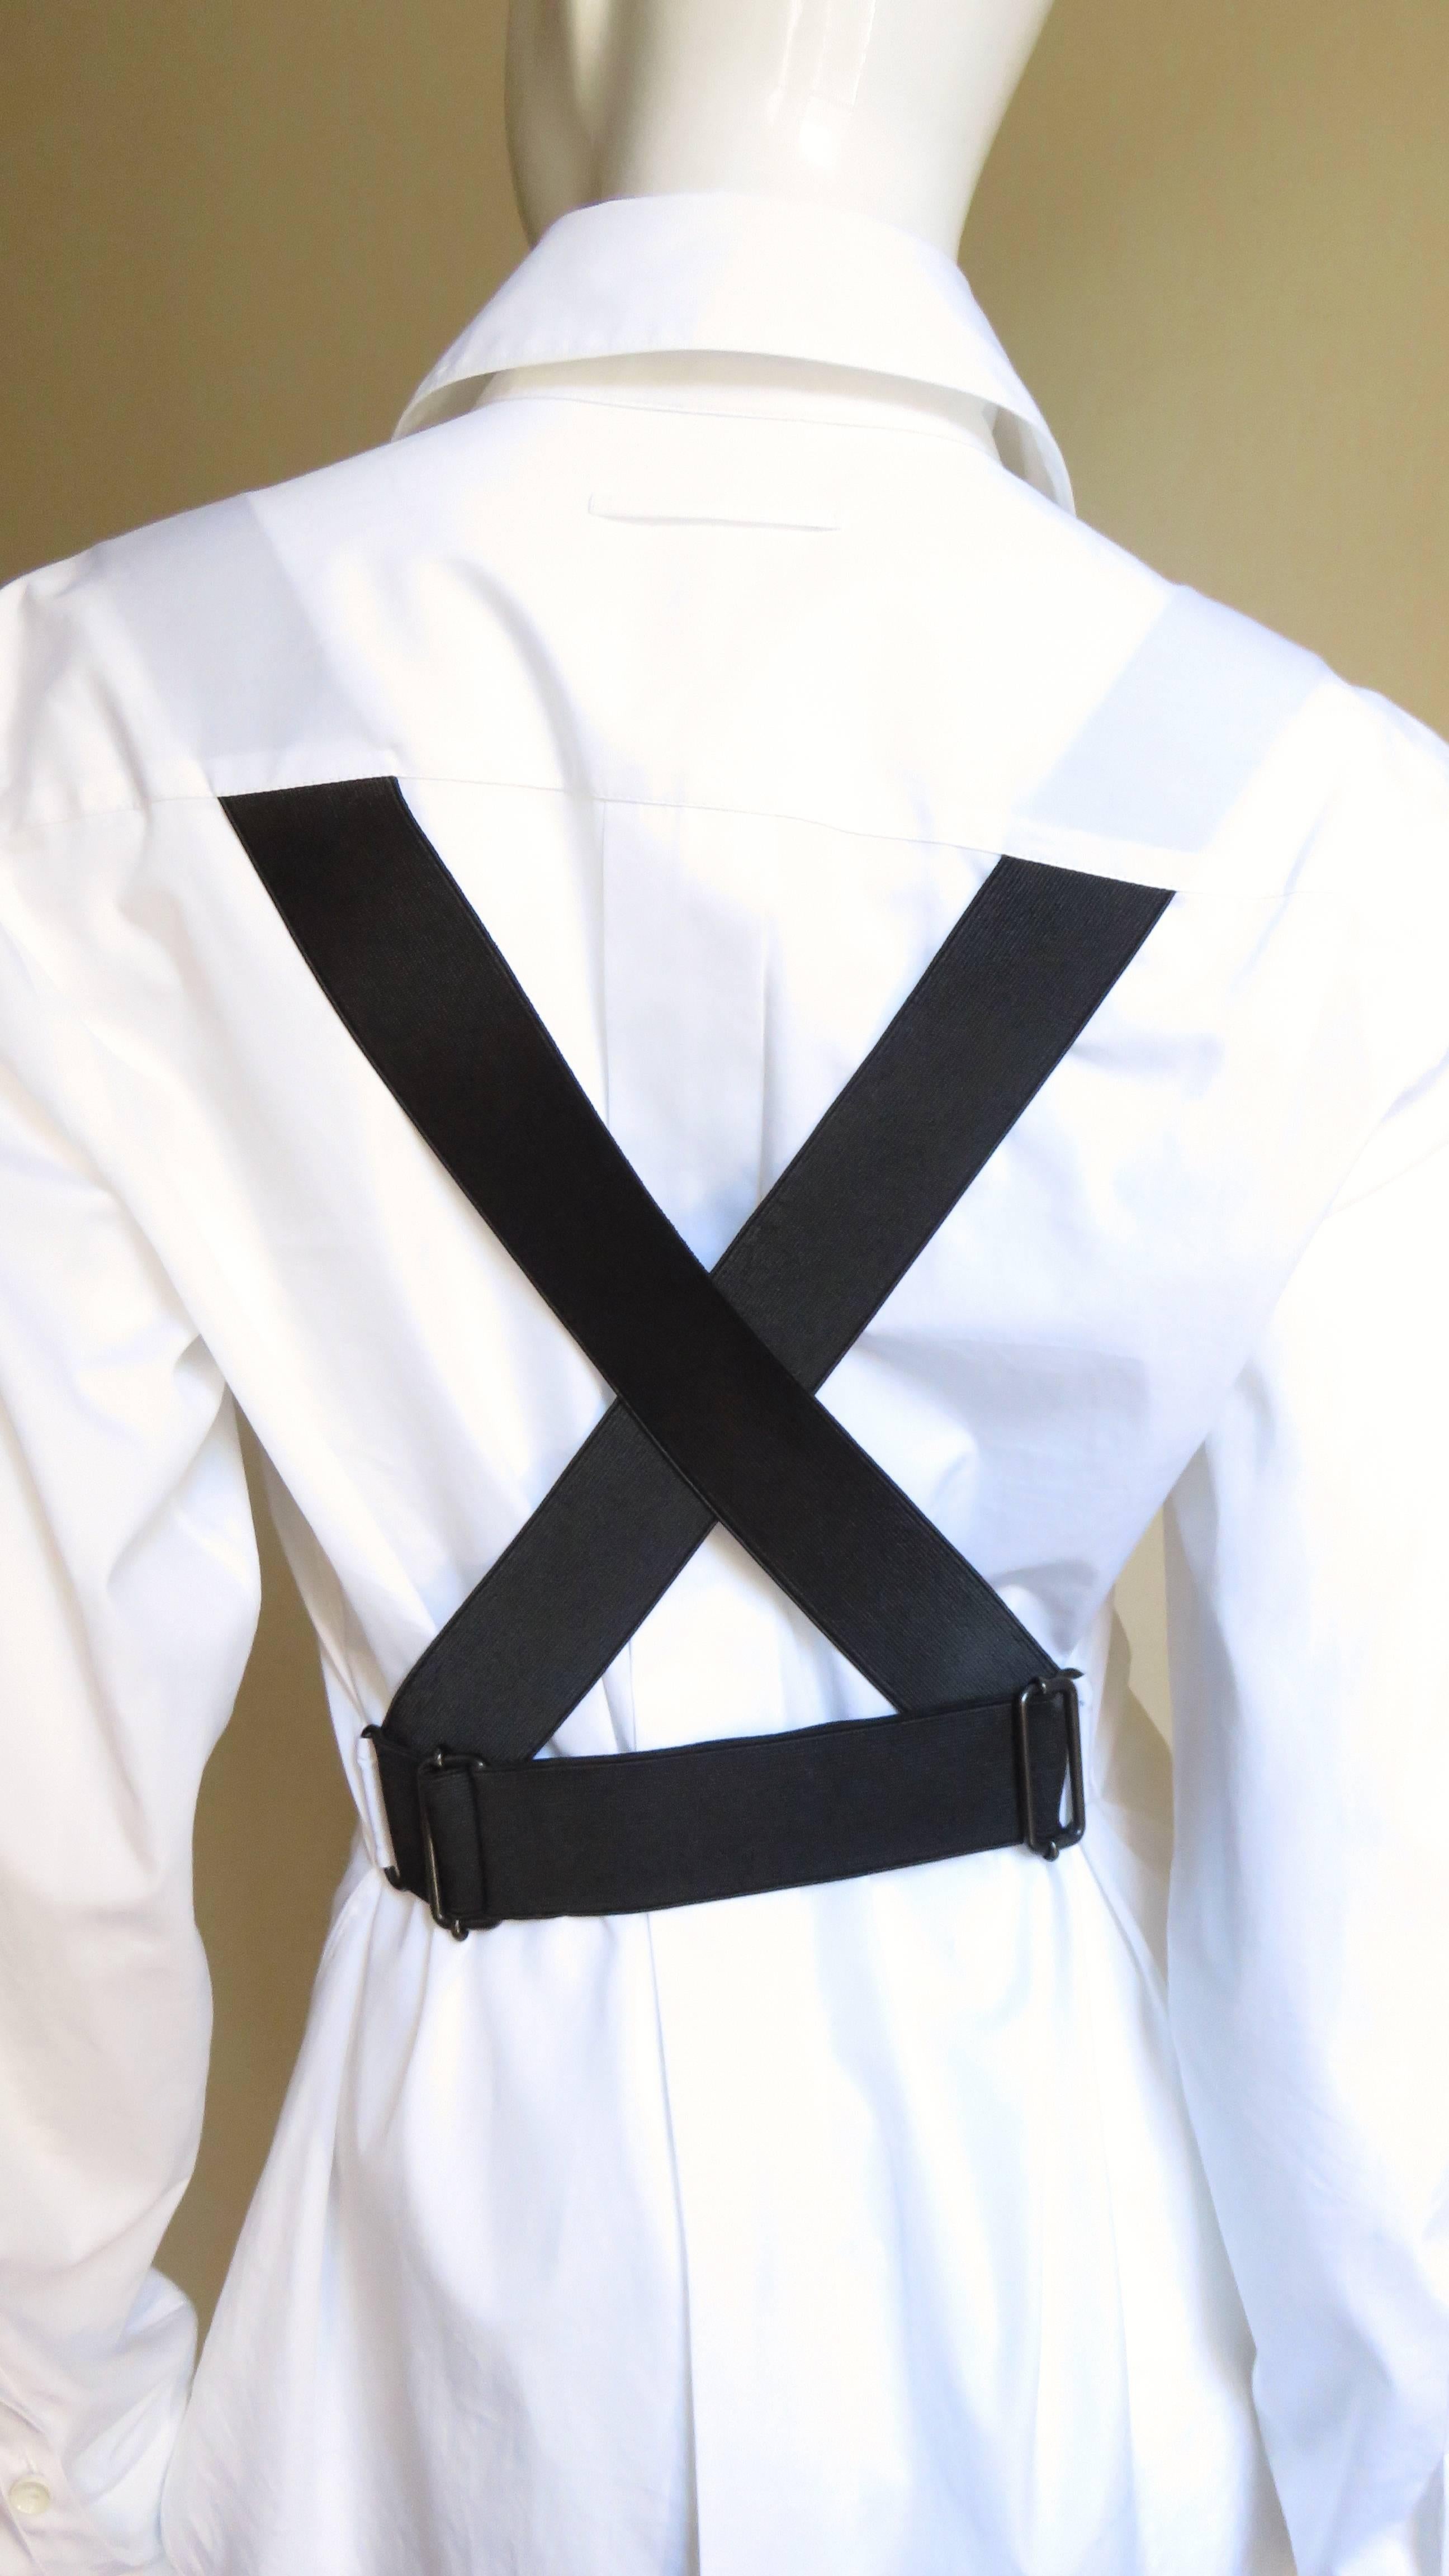 Fabulous Gaultier Cross Back White Shirt 1